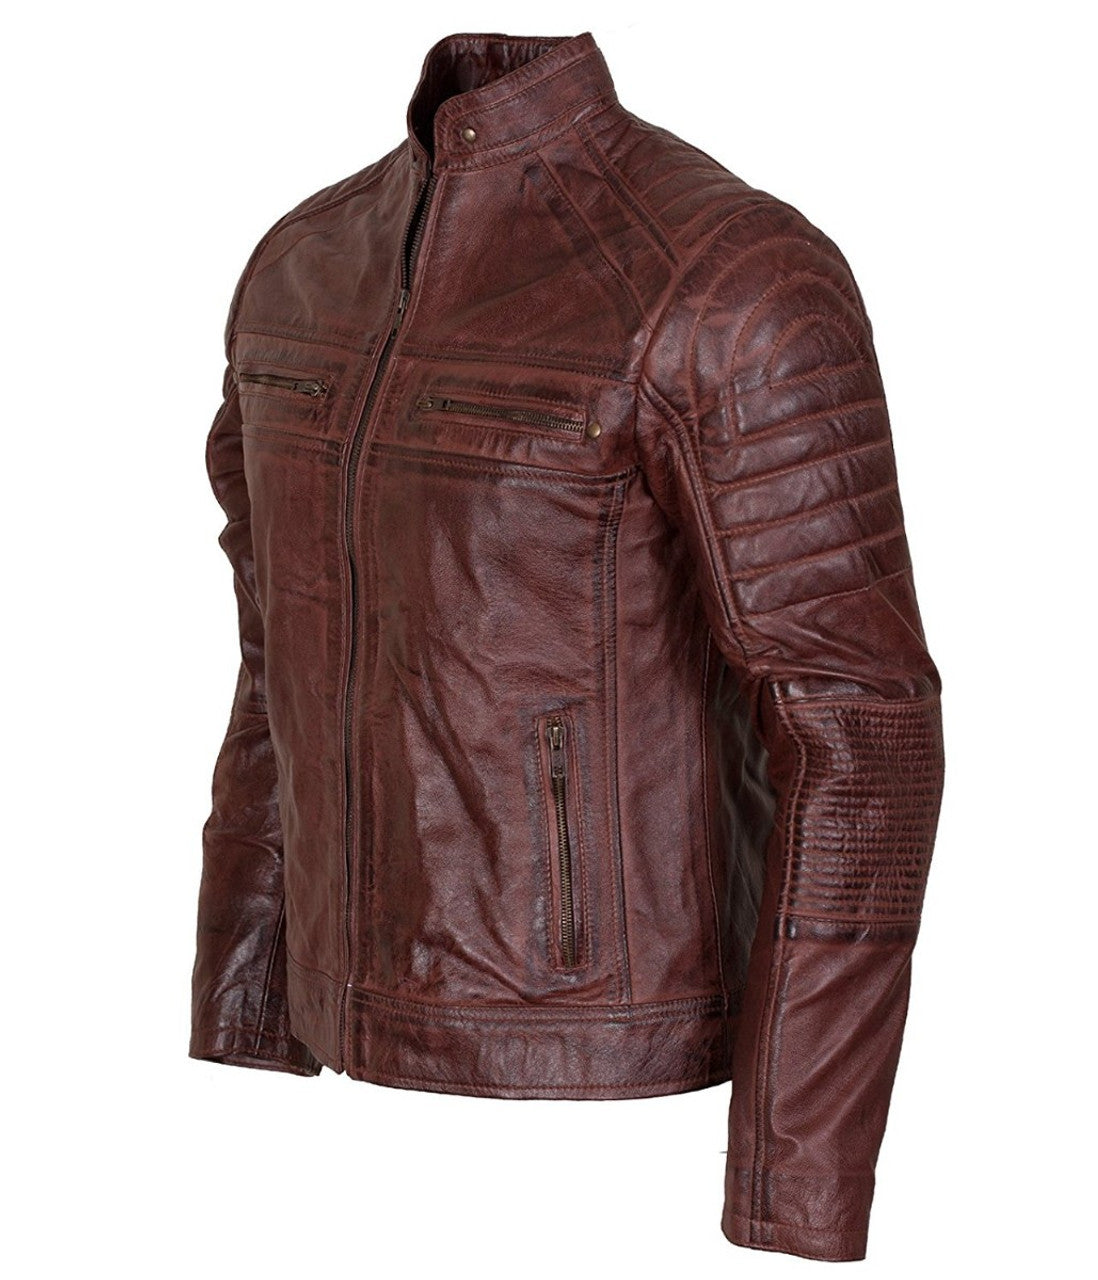 biker leather jacket men's waxed leather jacket vintage look jacket genuine leather jacket for men handmade jacket vintage winter jacket zipper jacket for men rust jacket 